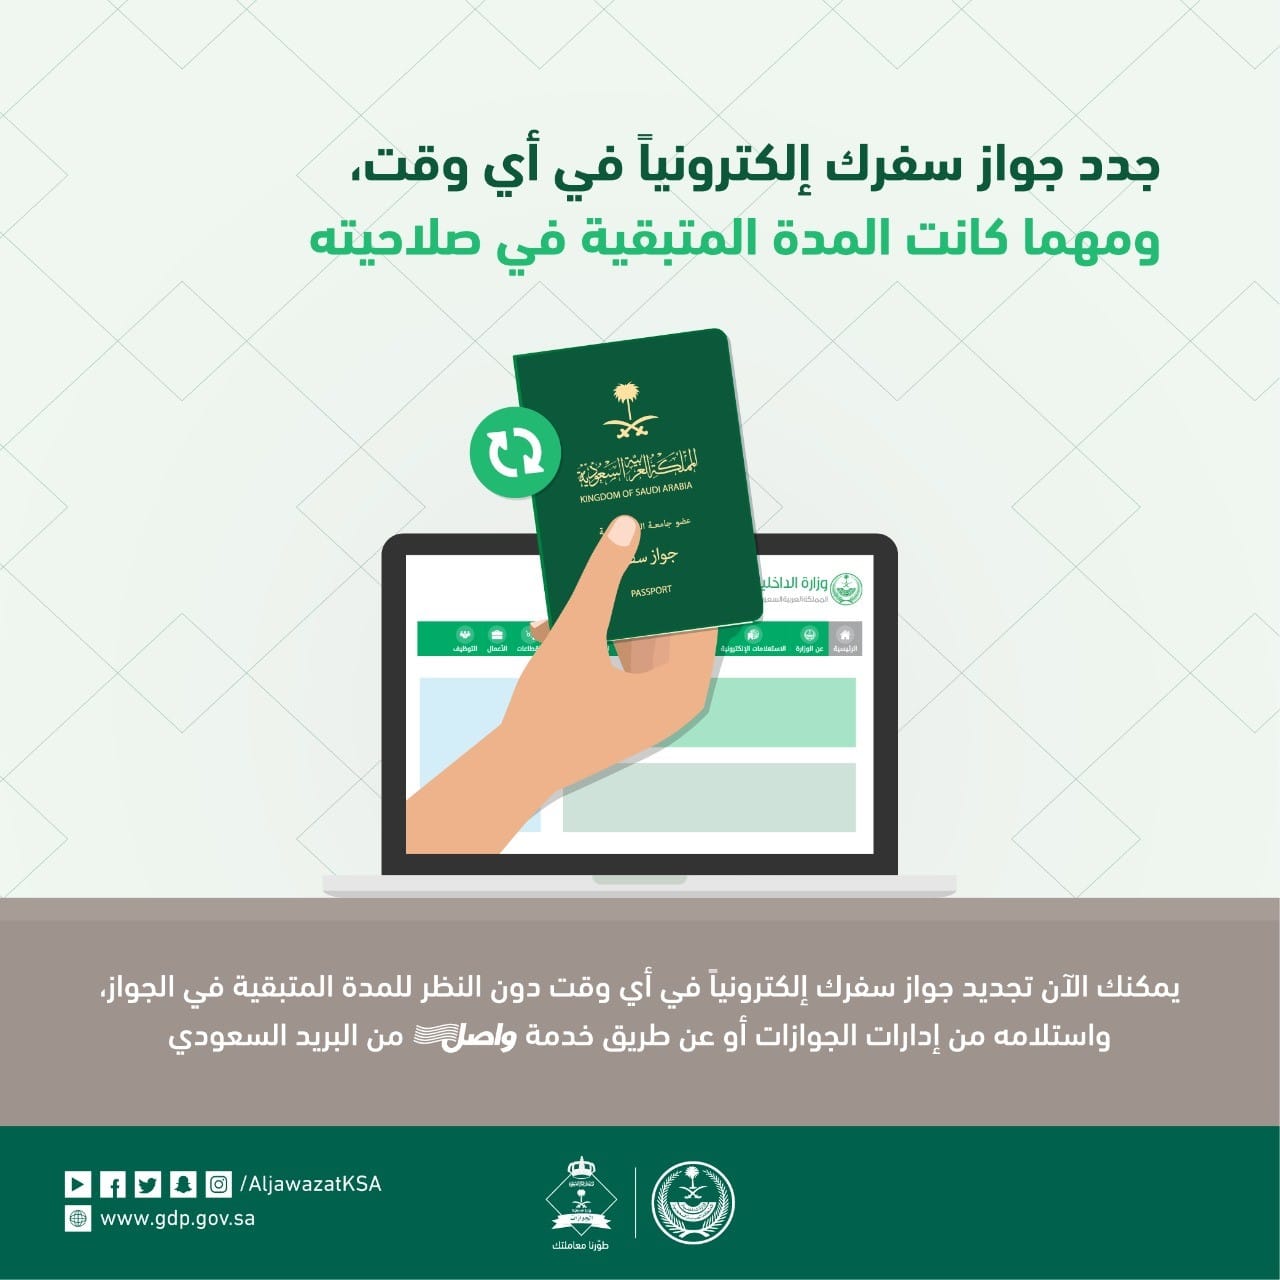 تجديد الجواز السعودي المنتهي